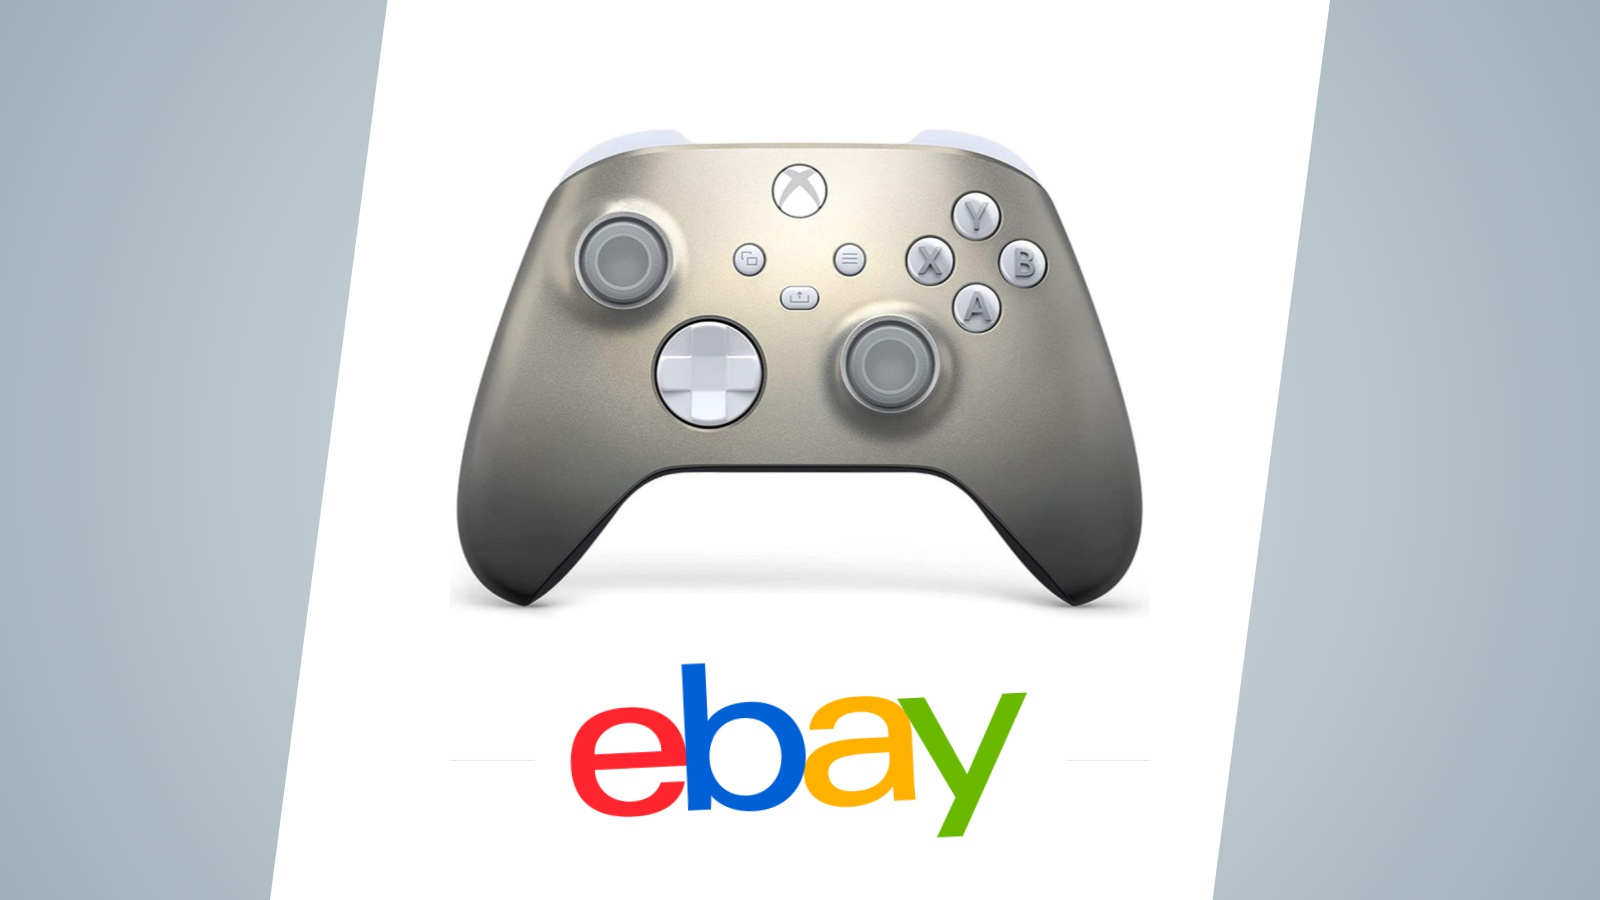 Offerte eBay: controller Xbox Lunar Shift in sconto, vediamo il prezzo